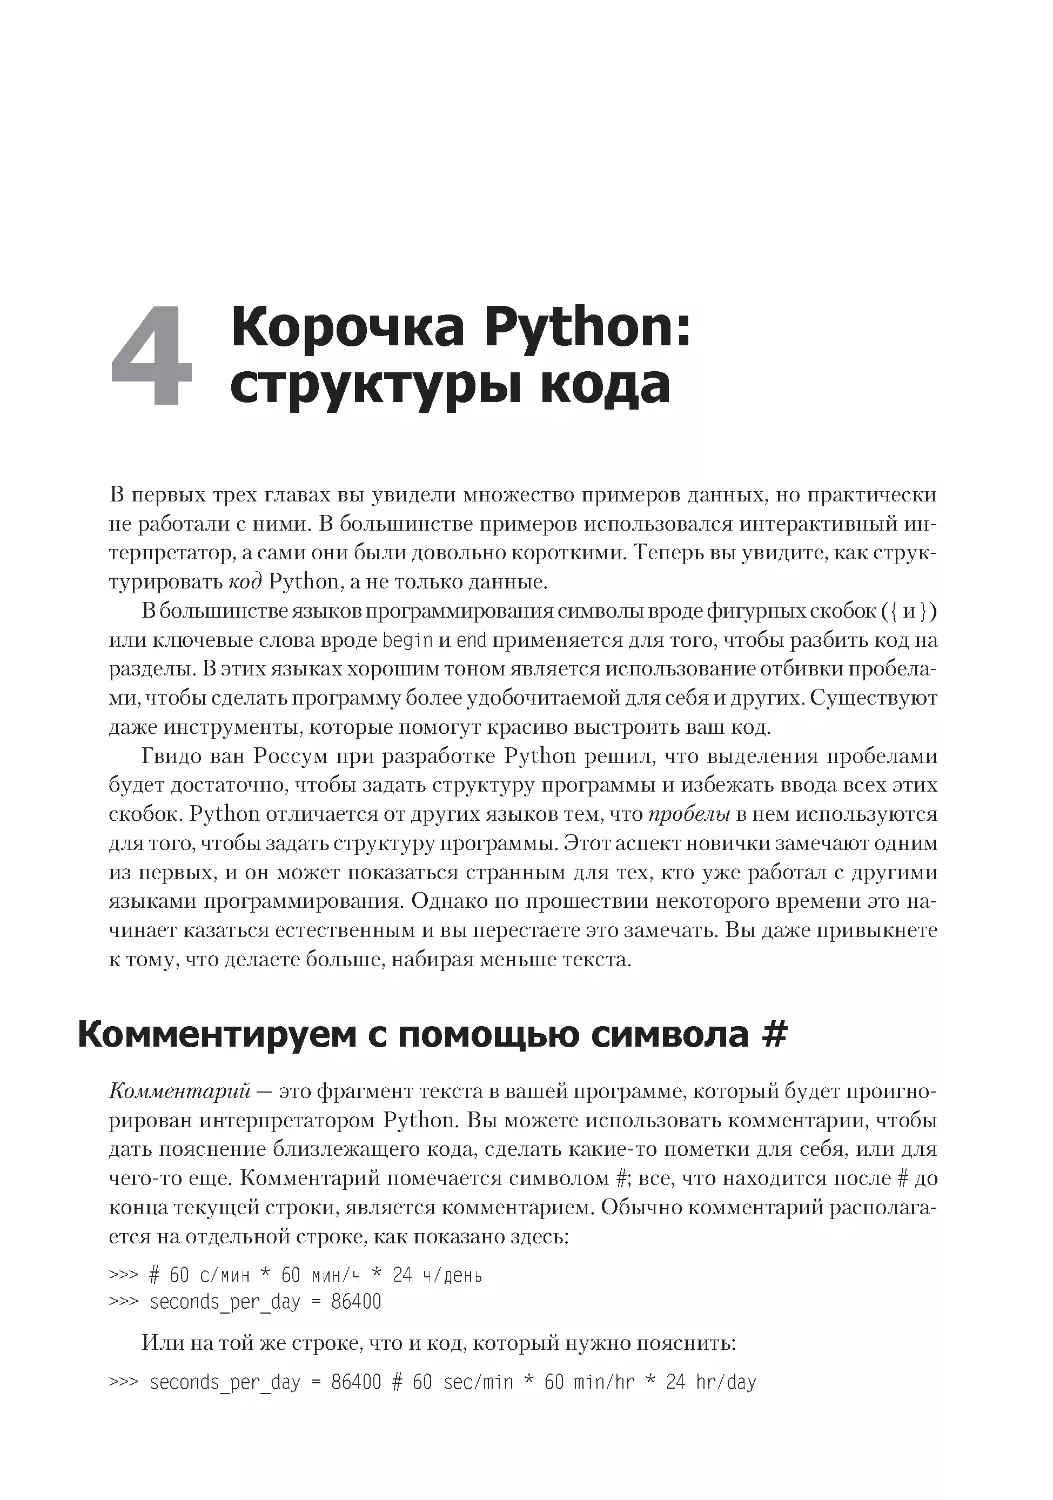 Глава 4. Корочка Python
Комментируем с помощью символа #